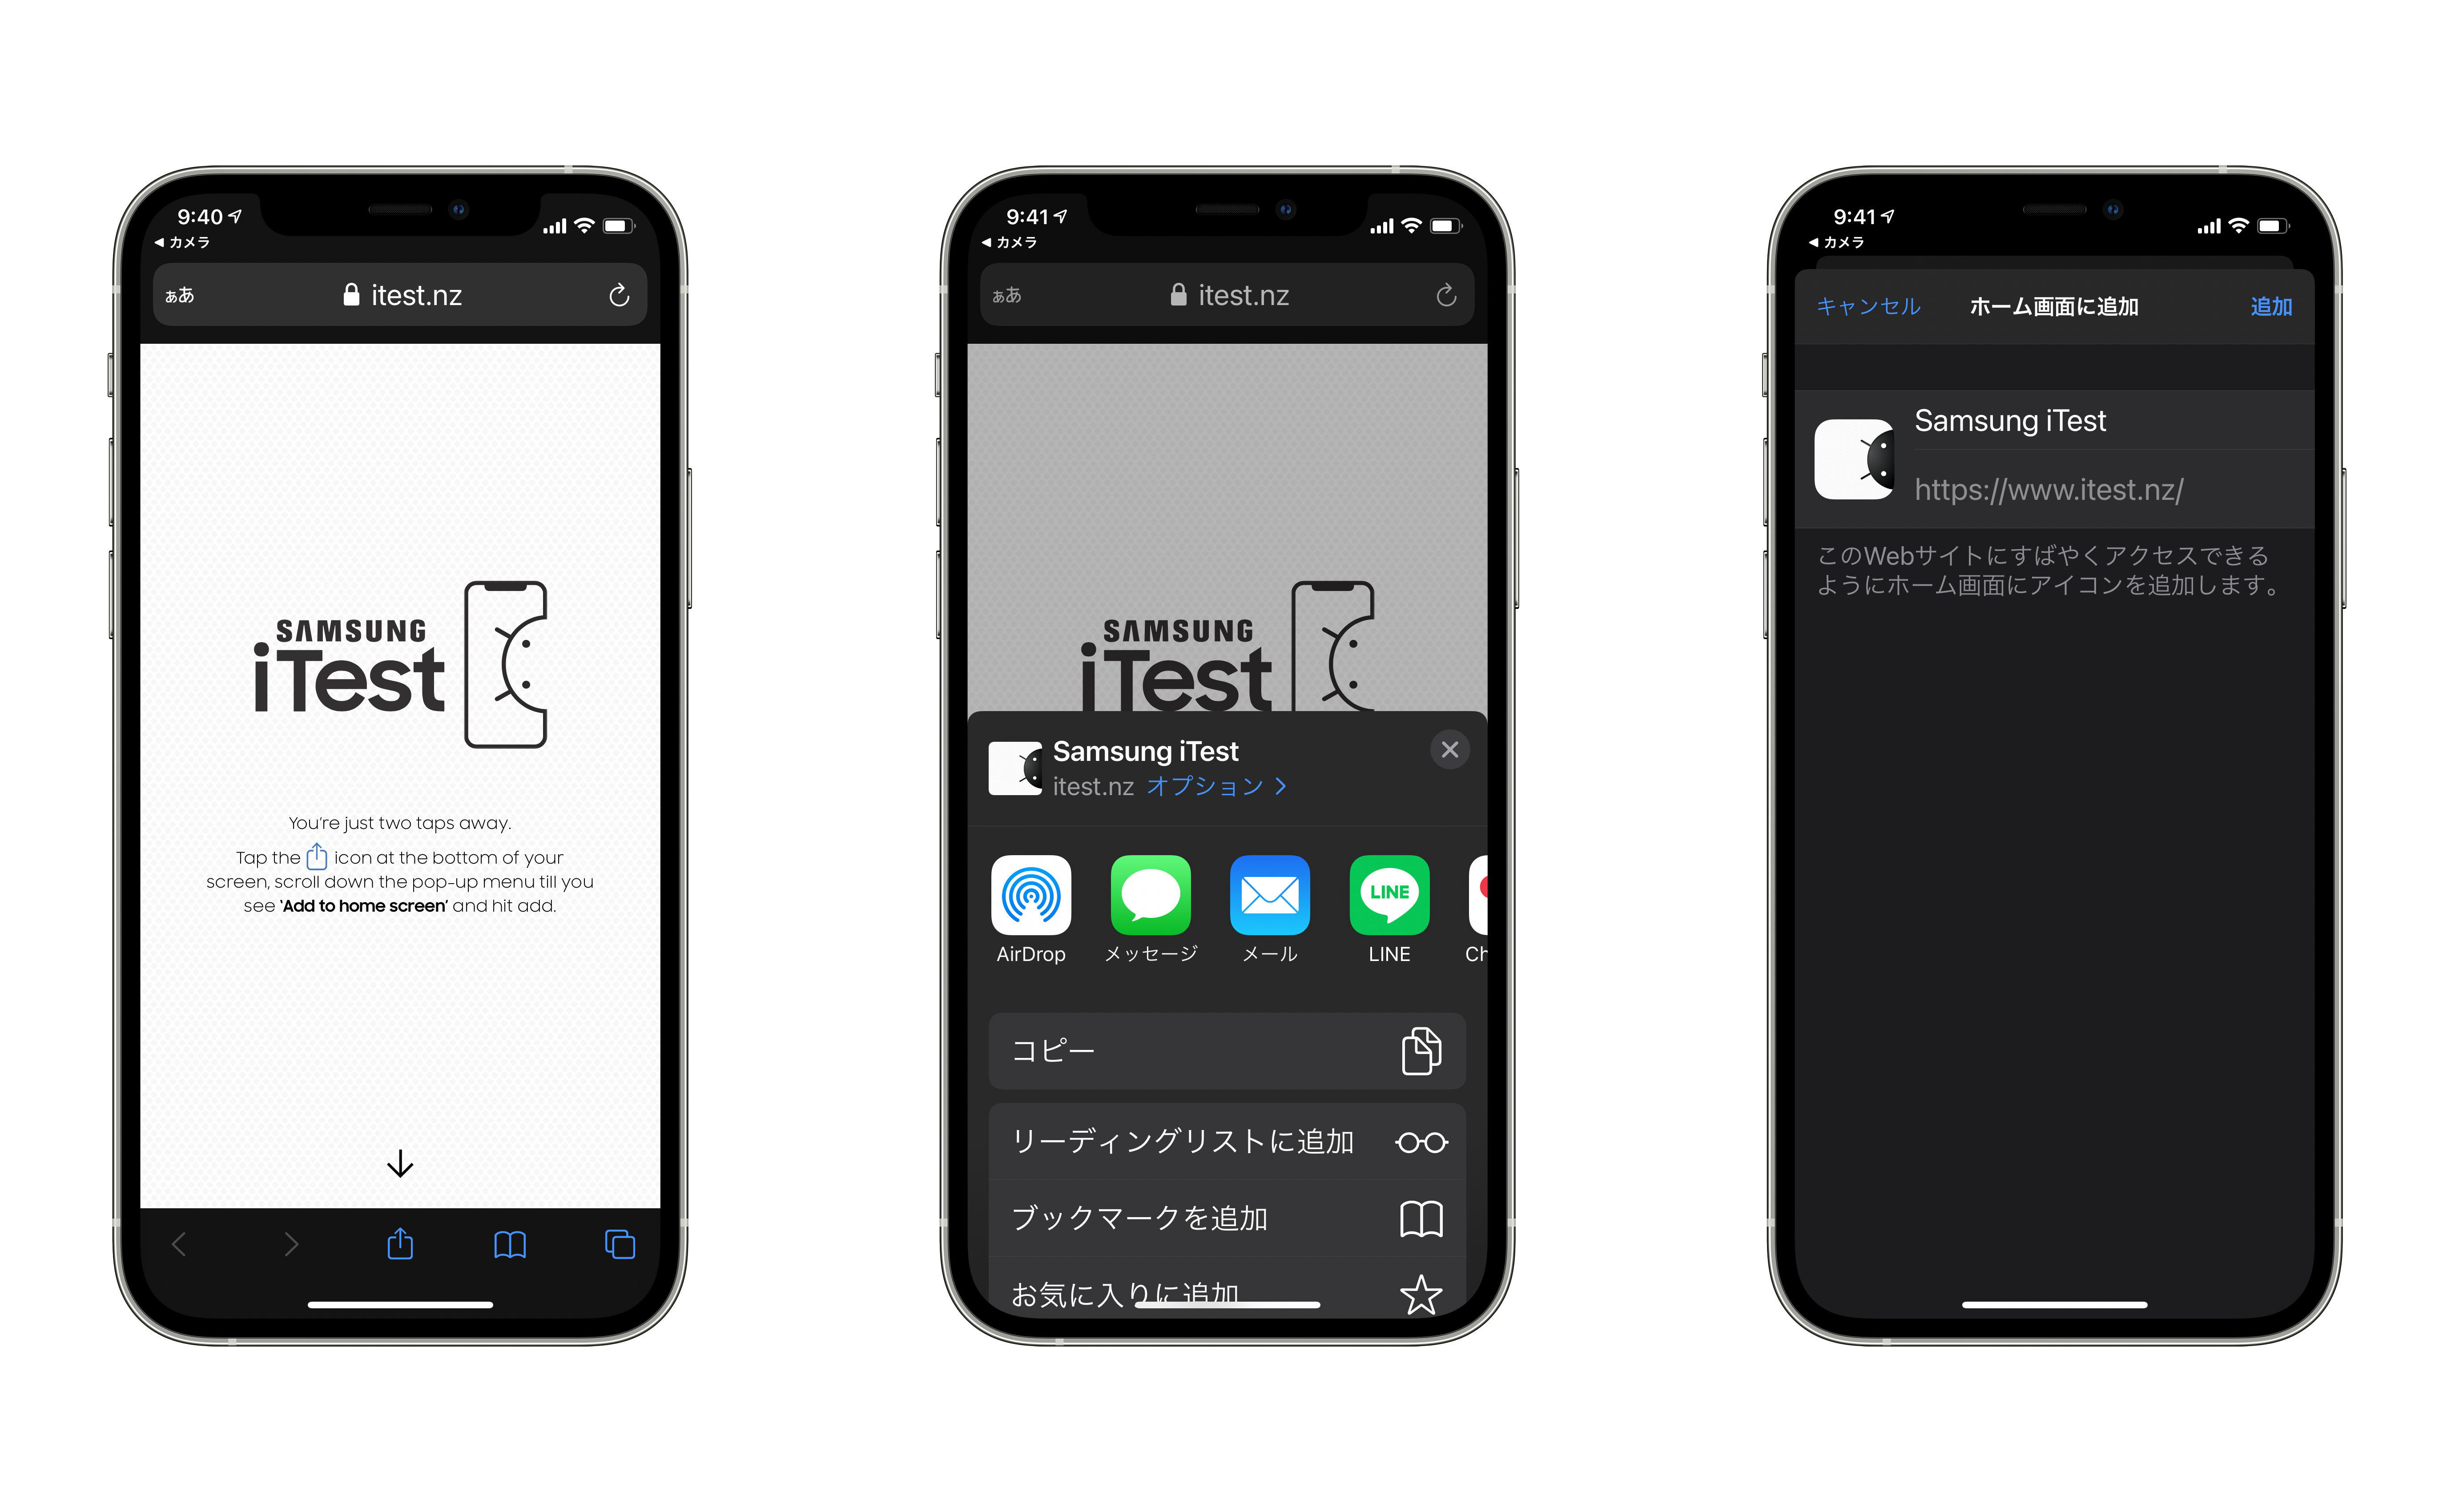 Samsung Iphoneでgalaxyスマホを試せる Itest 公開 Iphone Mania